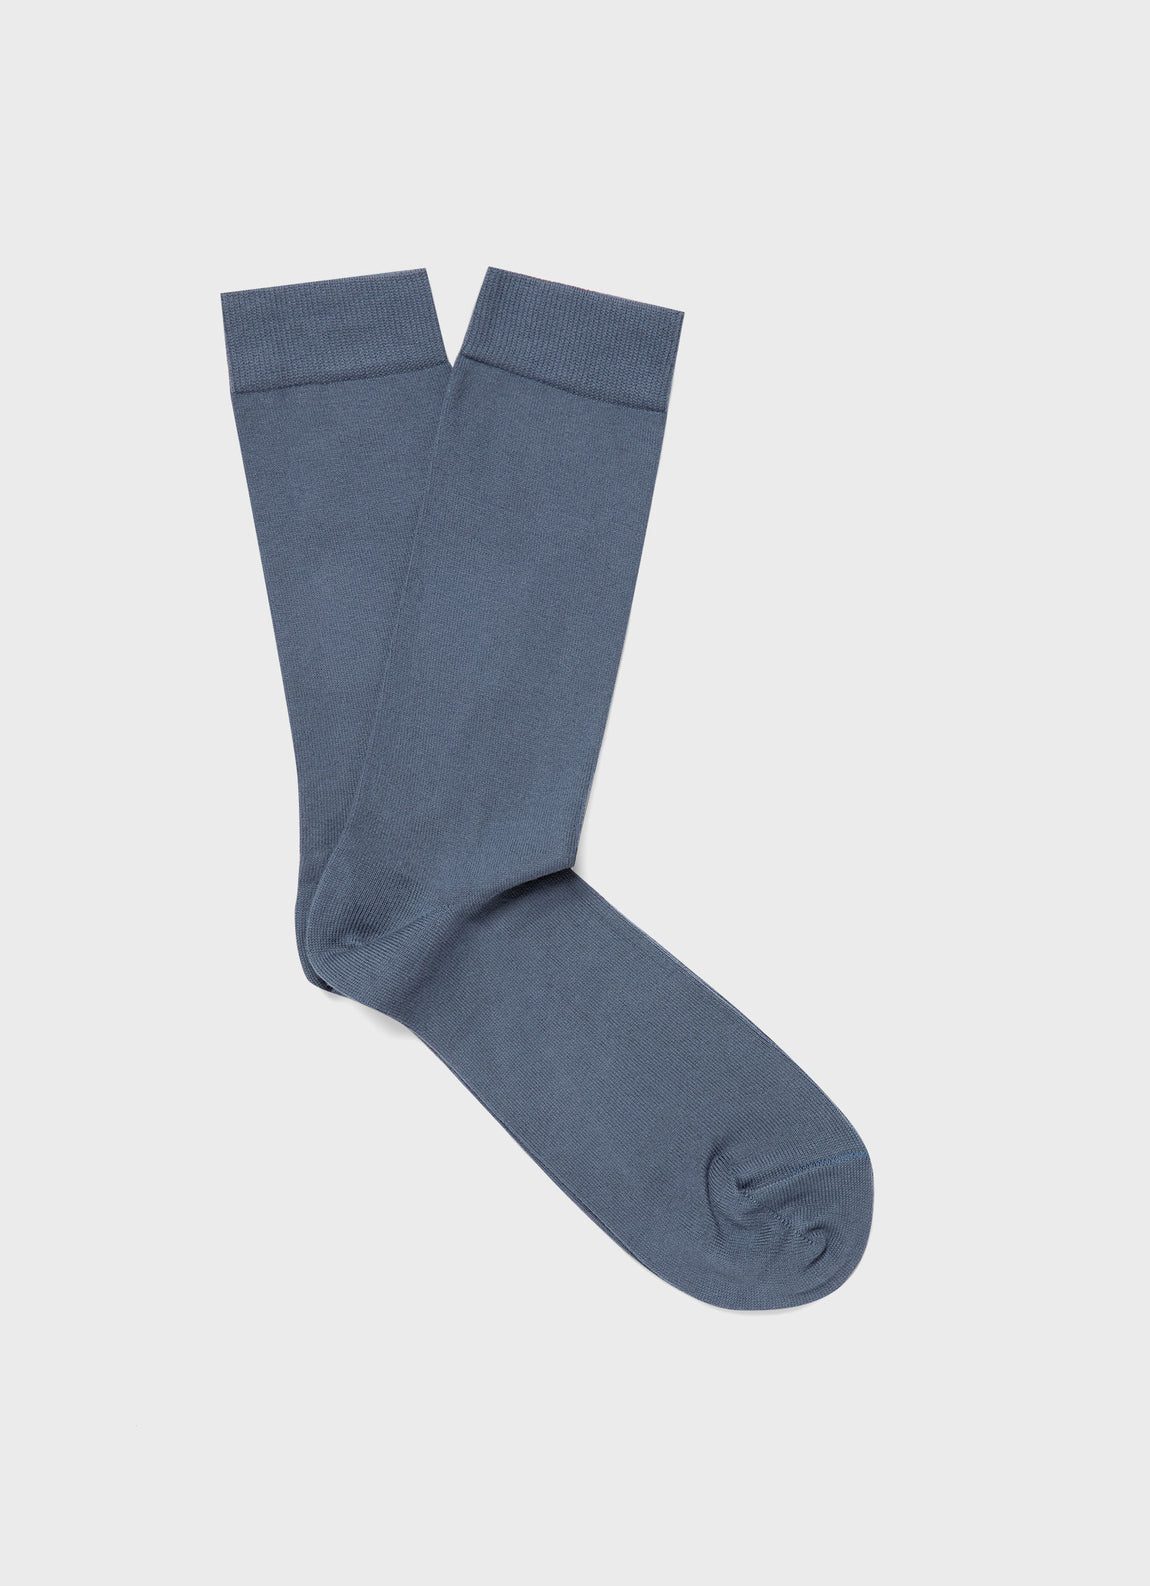 Men's Cotton Socks in Slate Blue | Sunspel